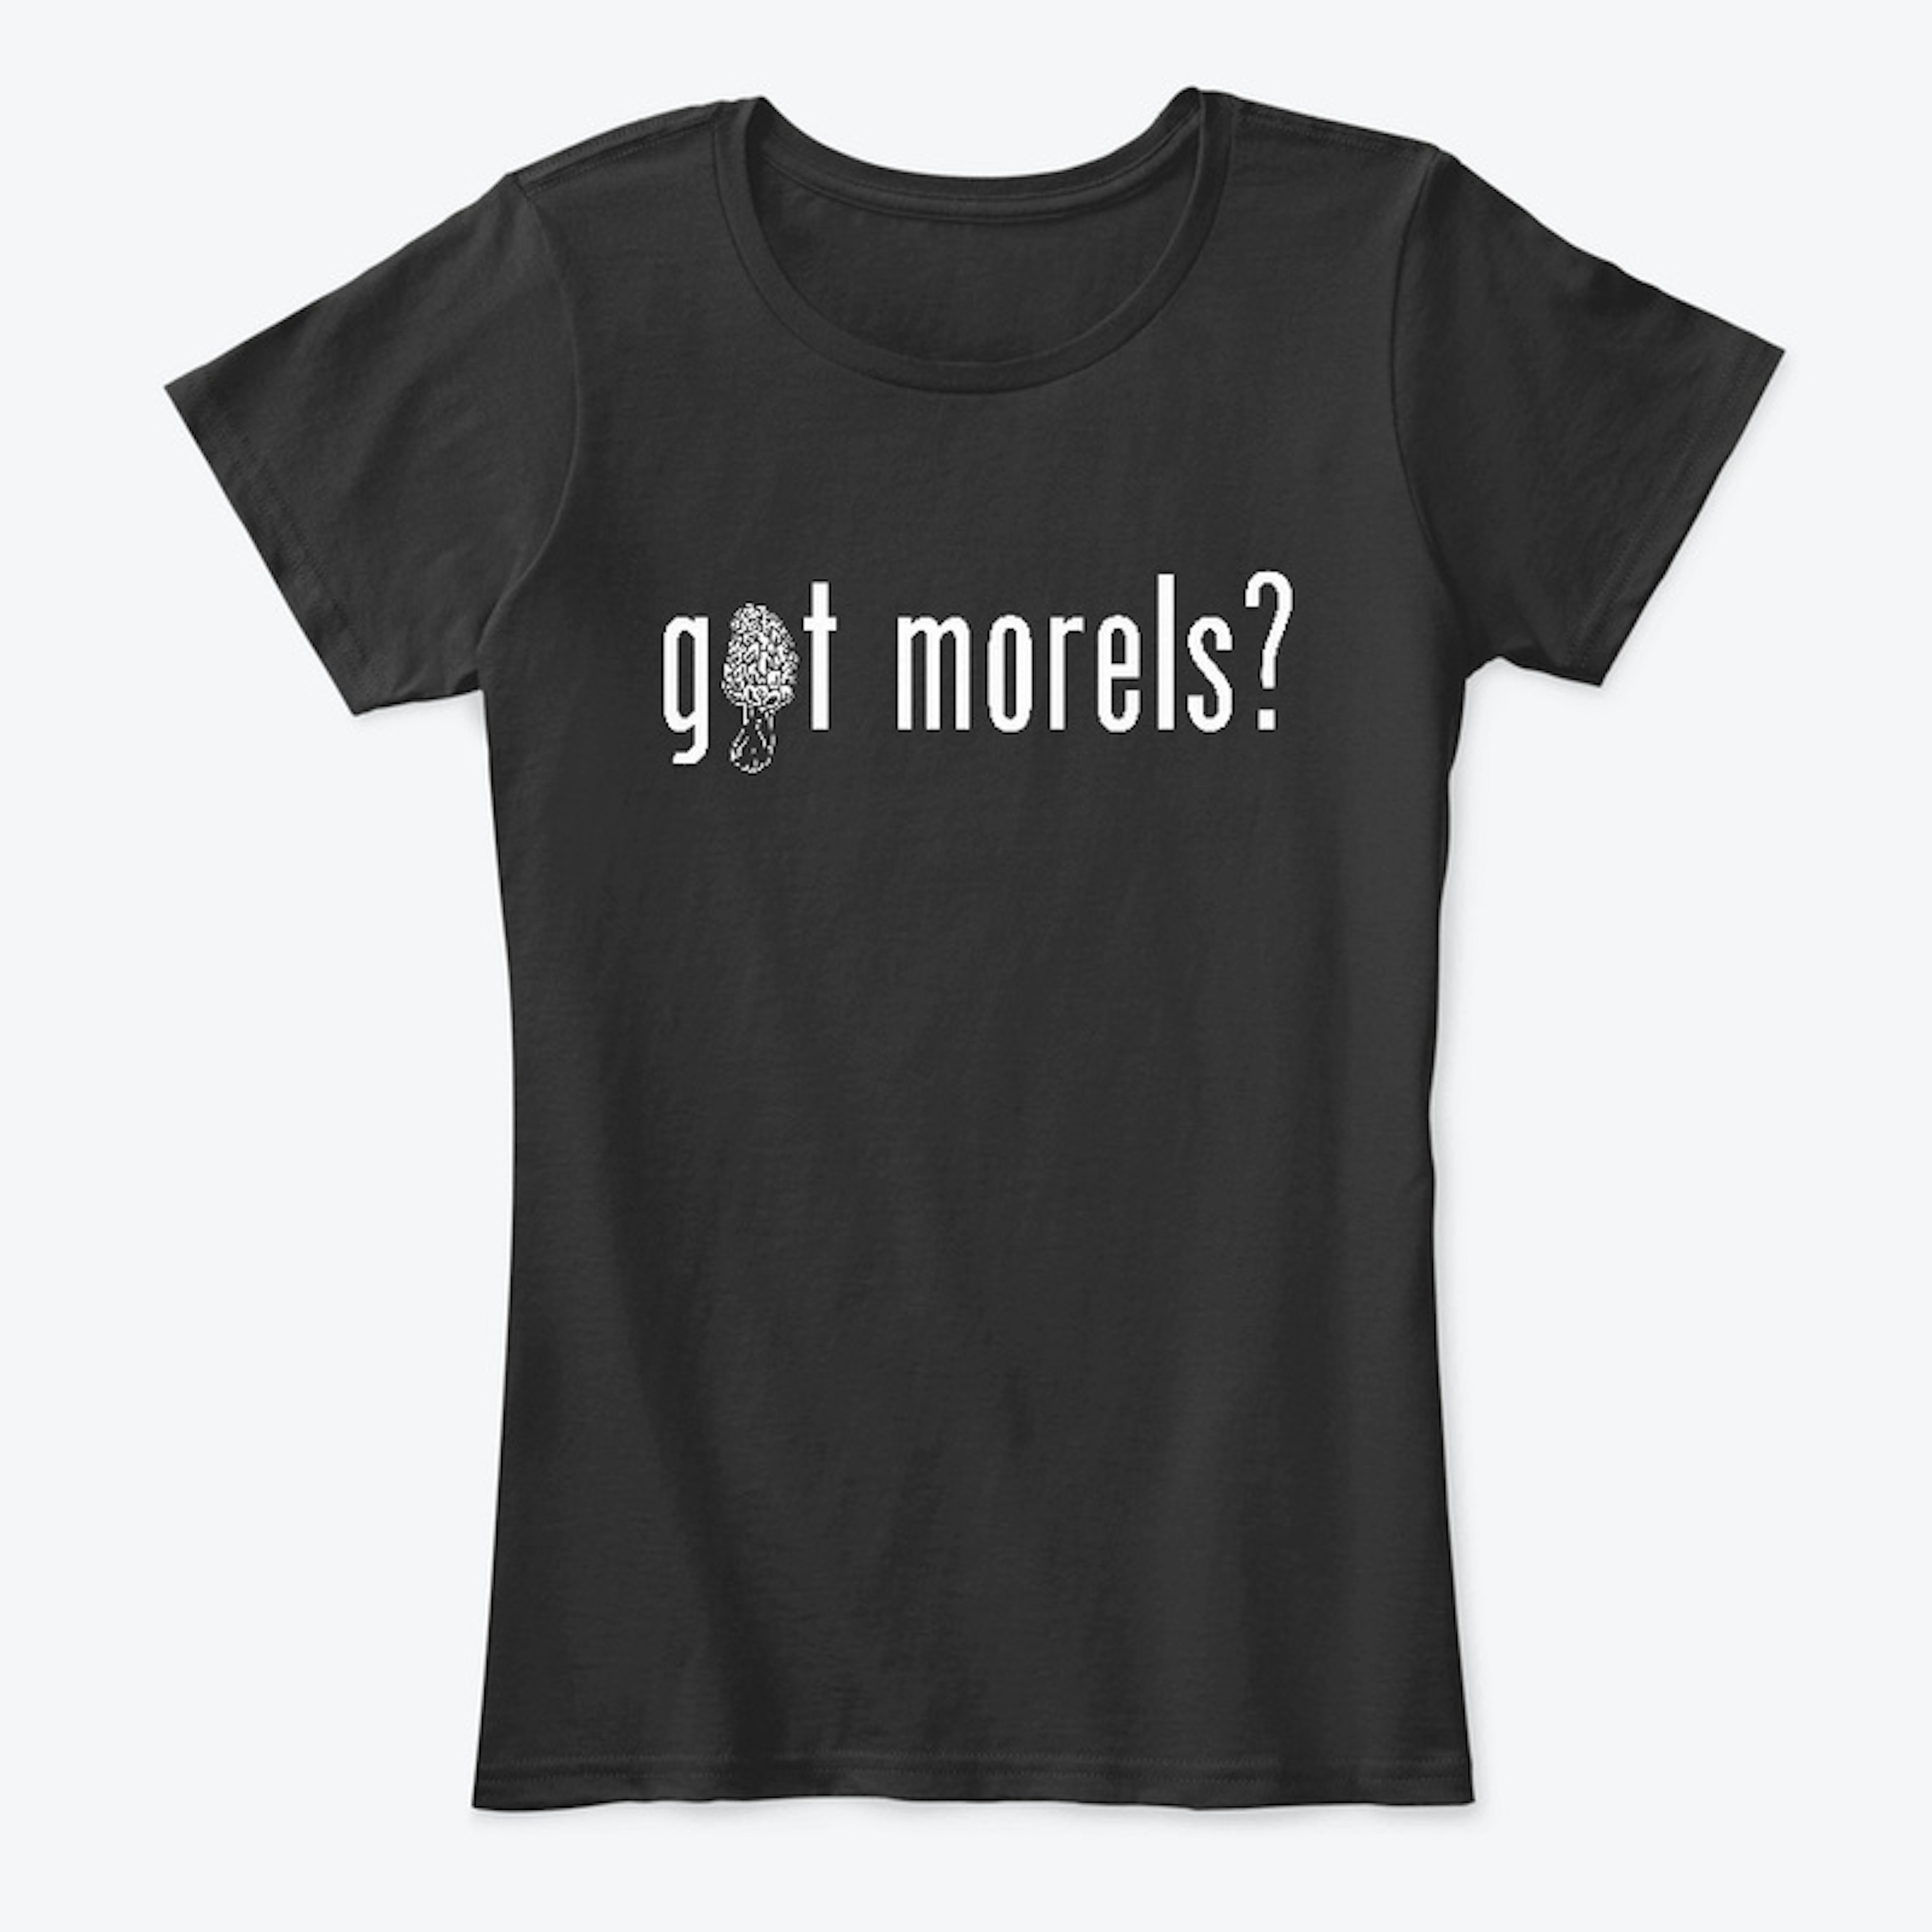 got morels?